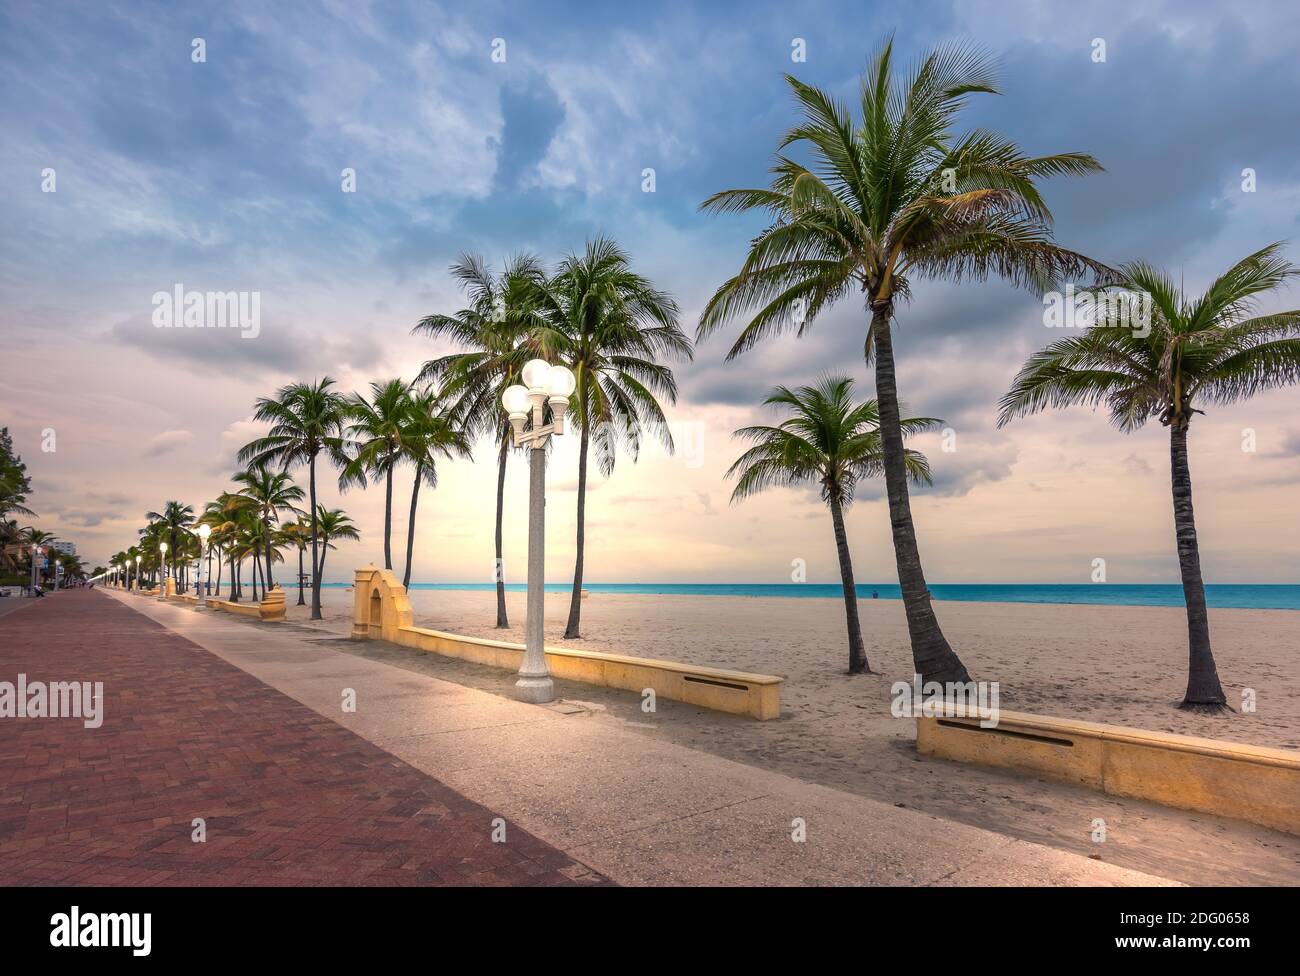 Hollywood Beach, Floride. Palmiers à noix de coco sur la plage et lumières de rue illuminées sur la promenade au crépuscule. Banque D'Images